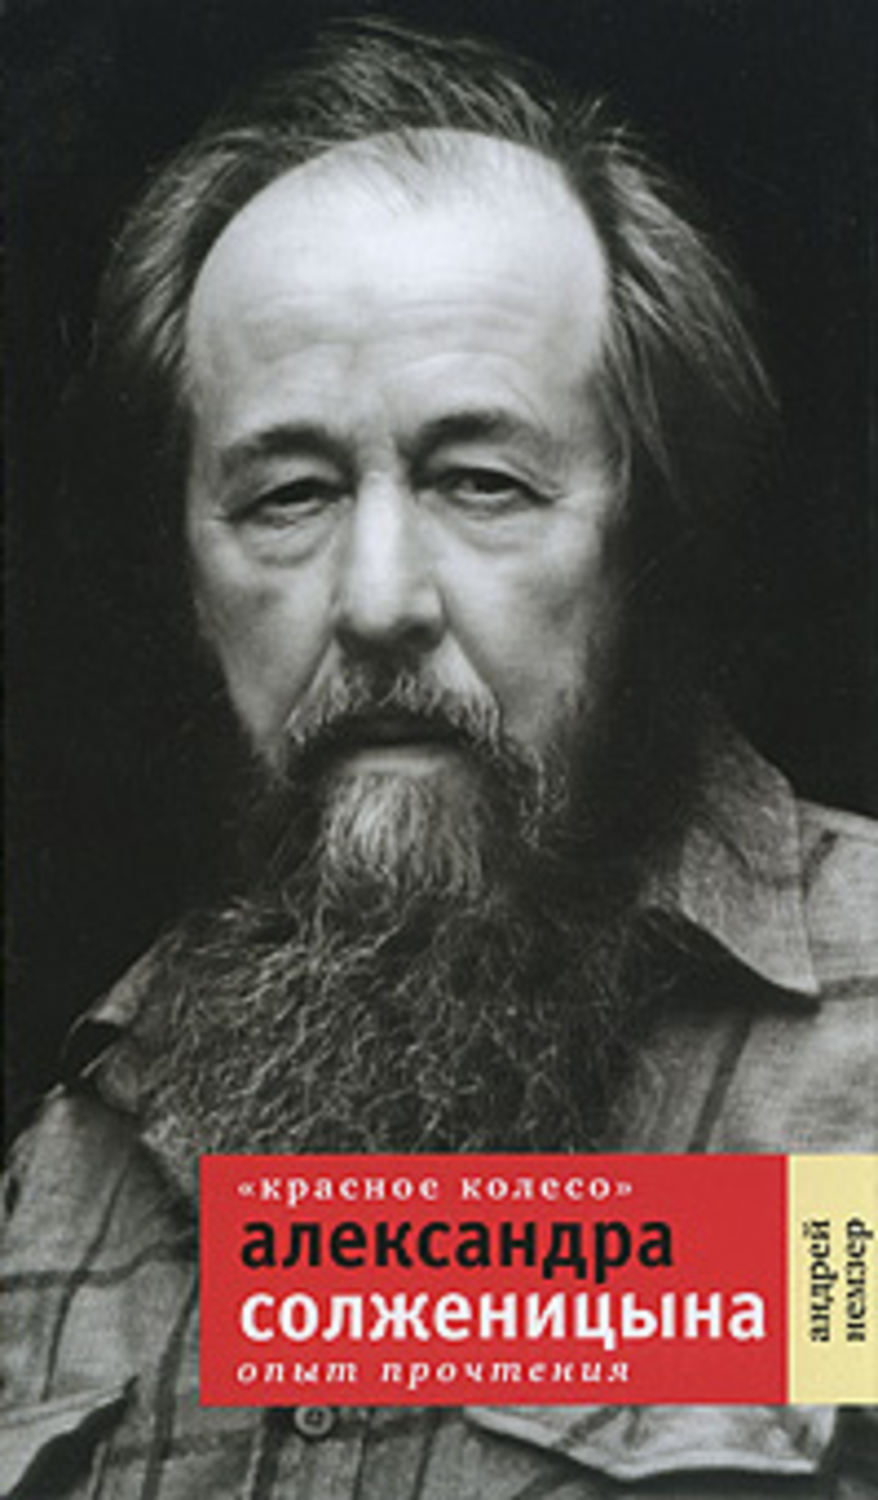 Андрей Немзер - ««Красное Колесо» Александра Солженицына. Опыт прочтения»